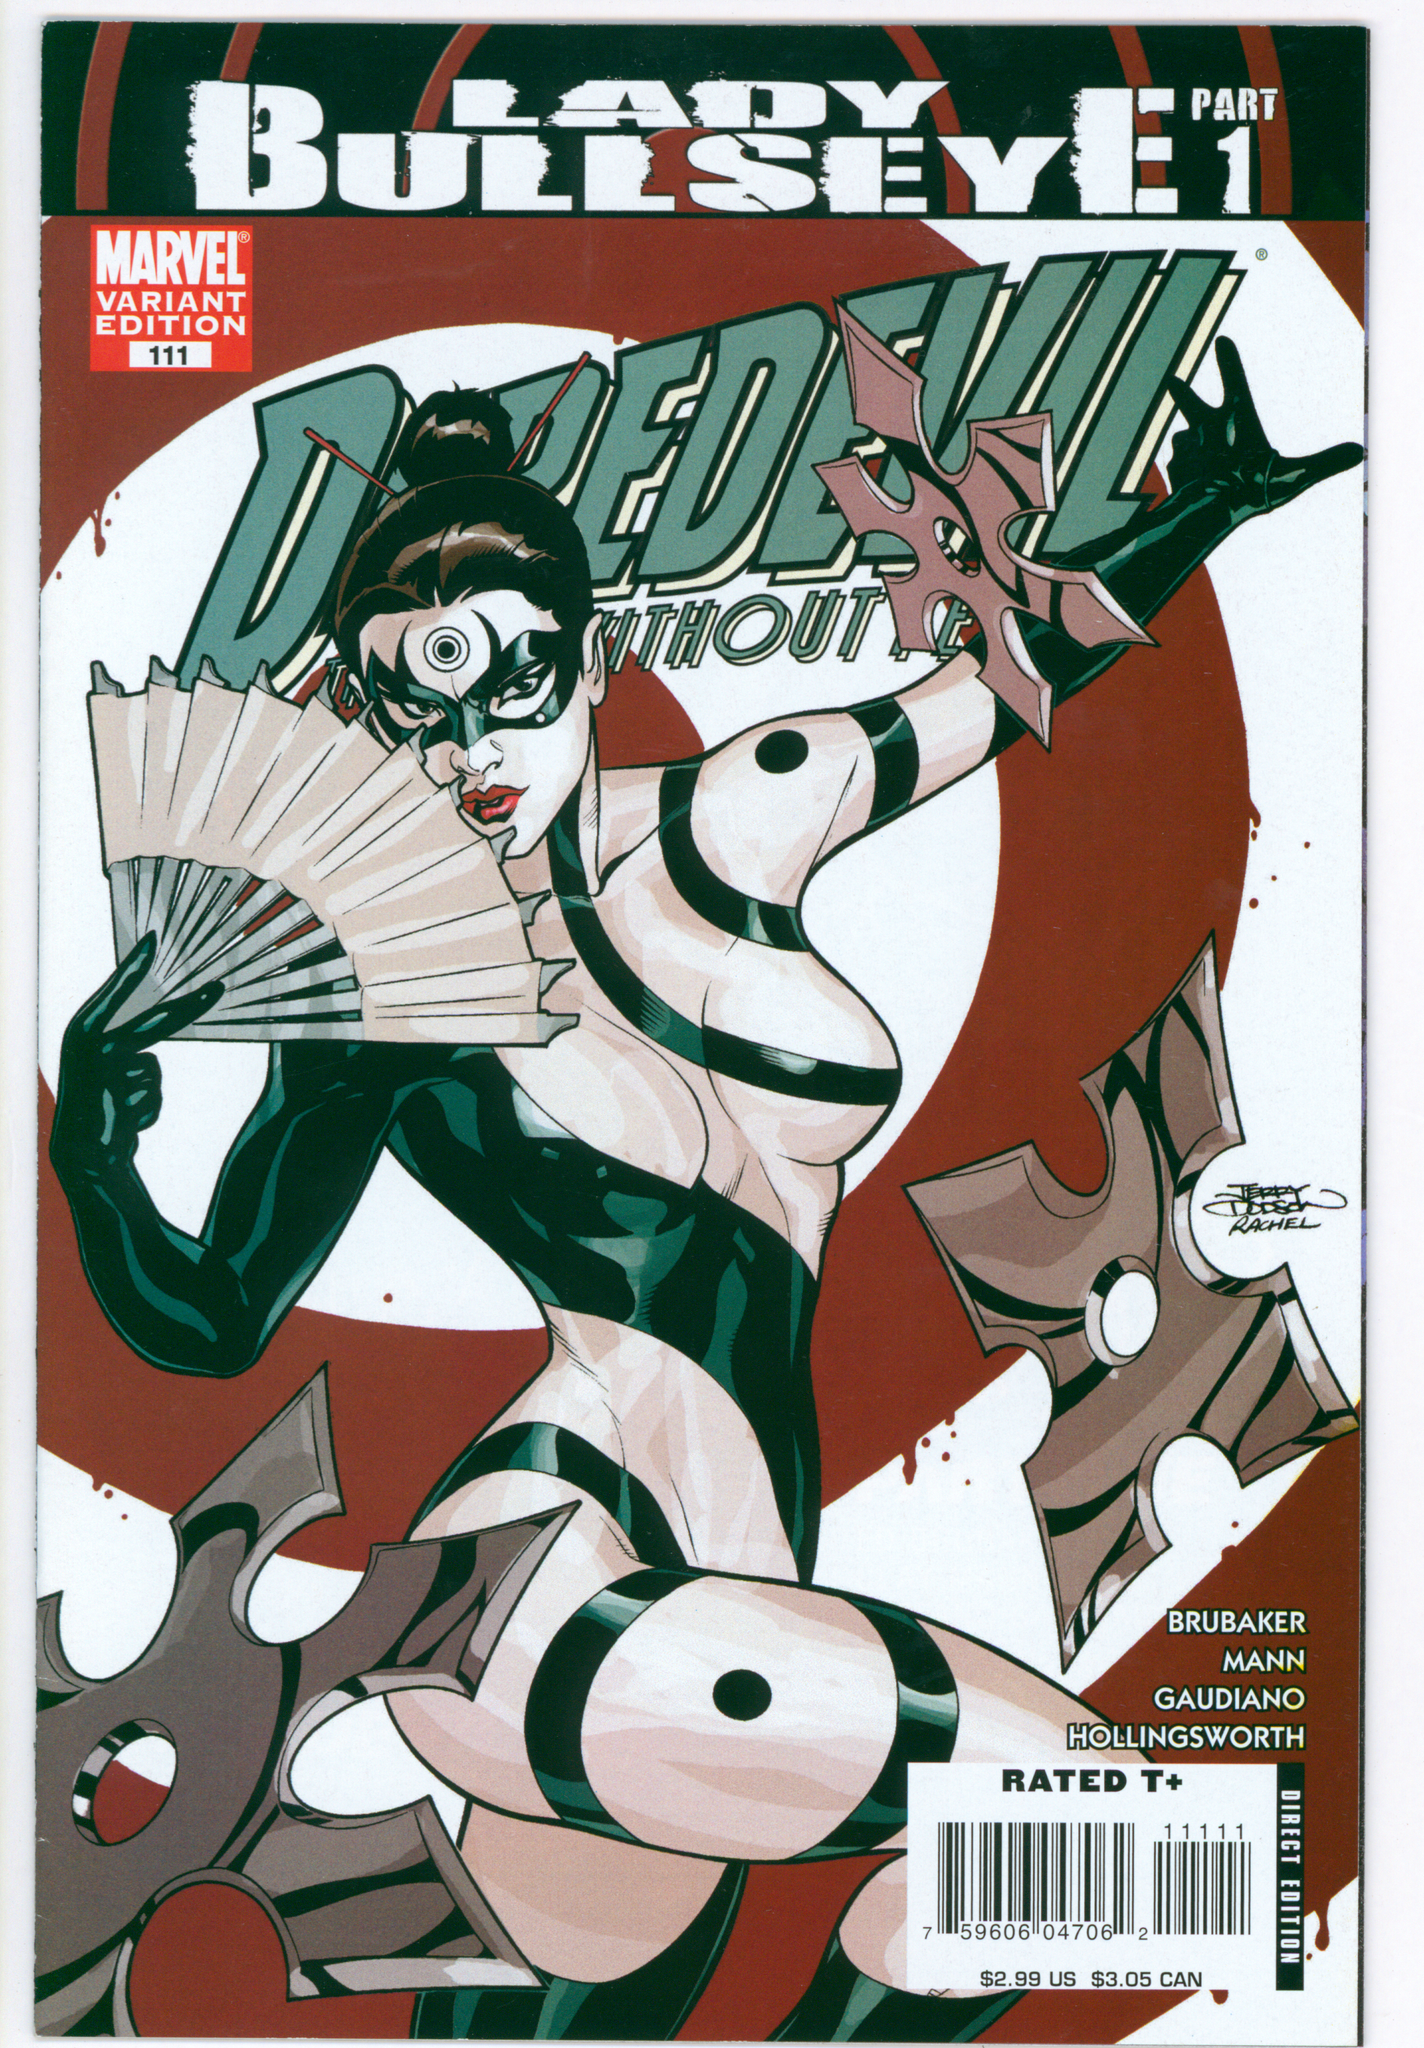 Daredevil #111 Variant Cover